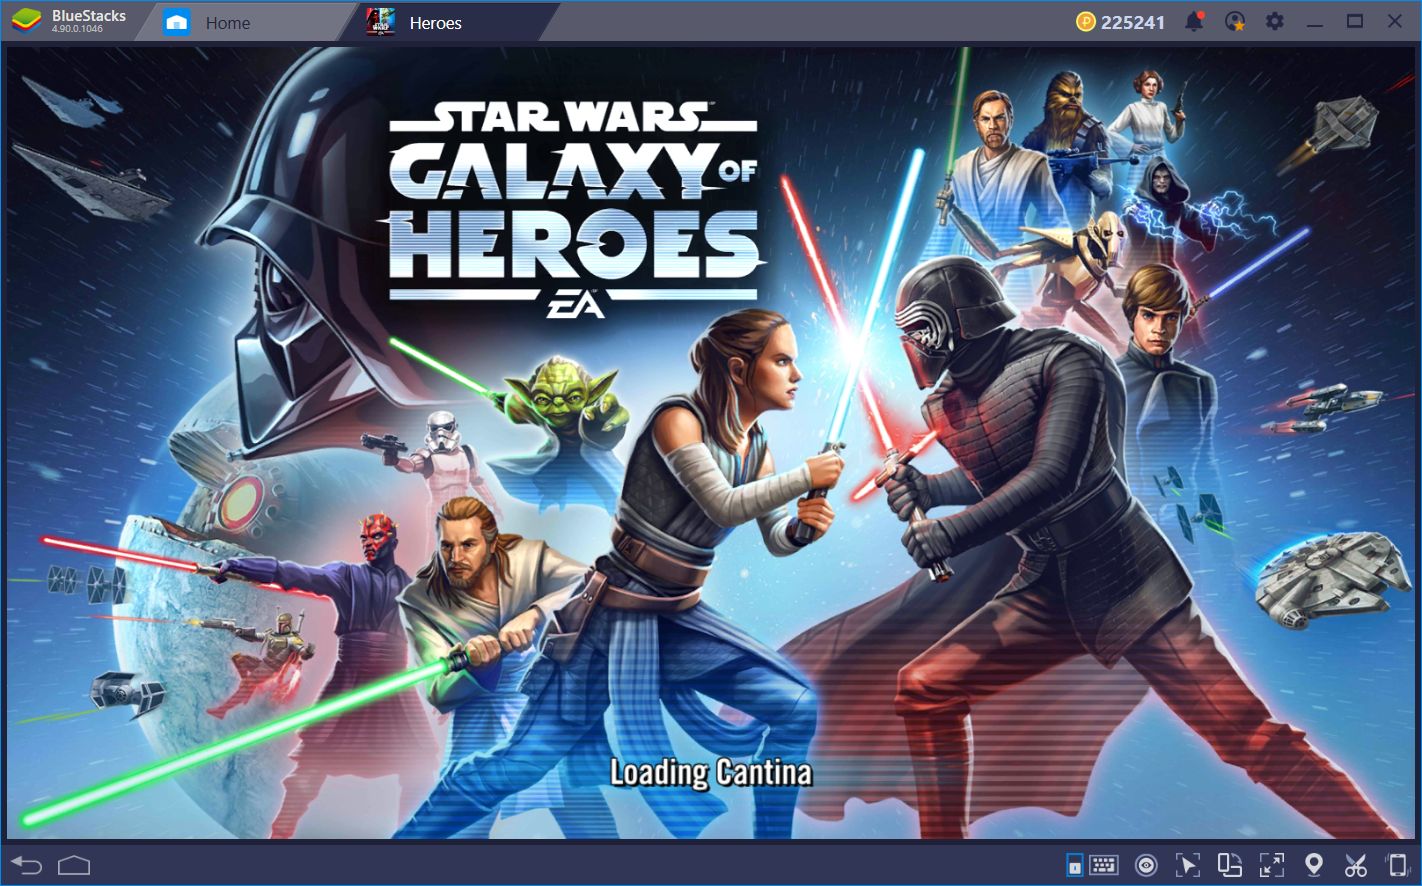 star wars galaxy of heroes offline server